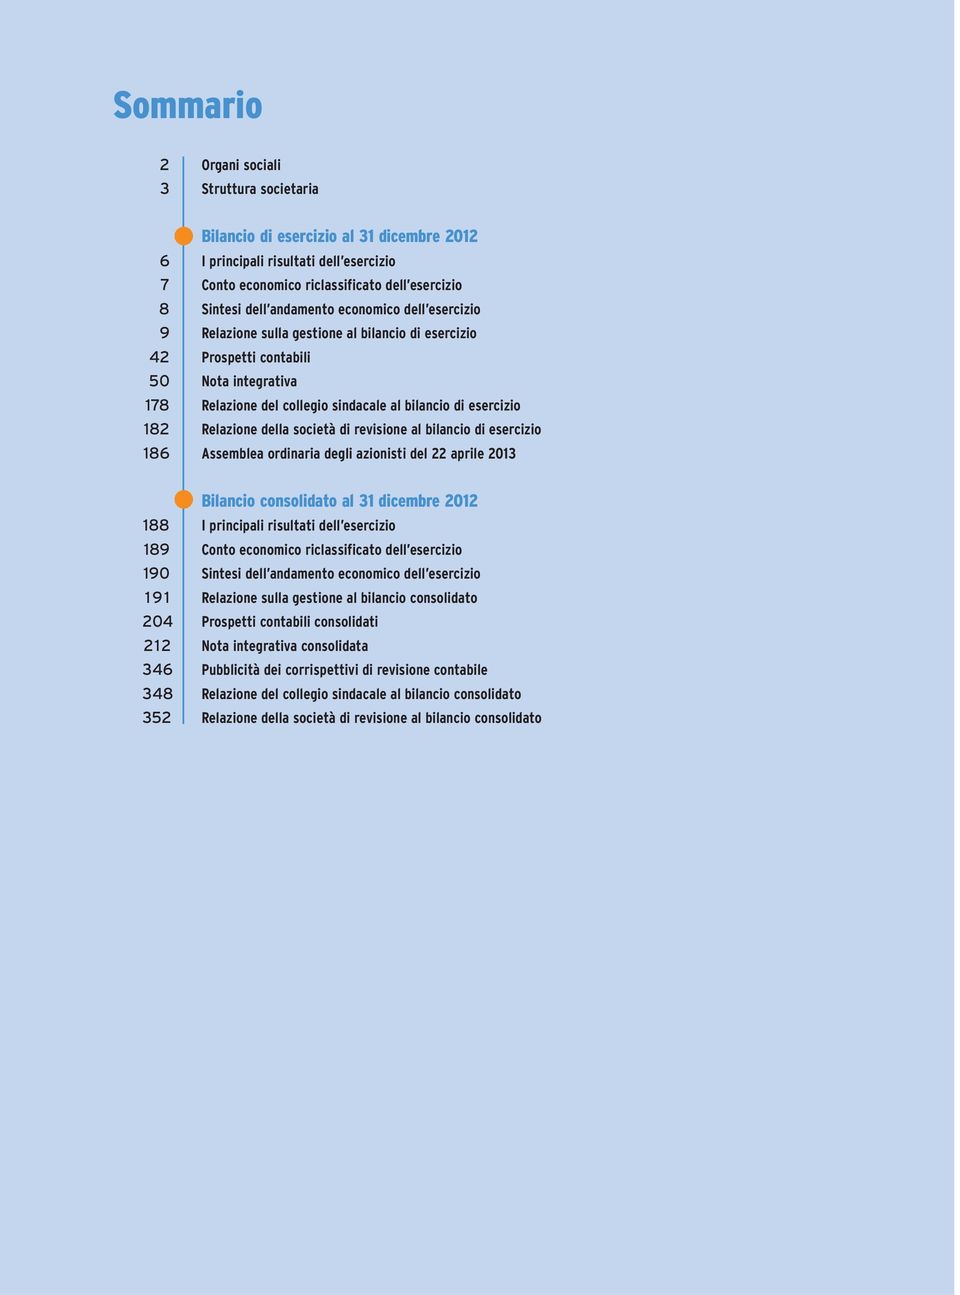 Relazione della società di revisione al bilancio di esercizio 186 Assemblea ordinaria degli azionisti del 22 aprile 2013 Bilancio consolidato al 31 dicembre 2012 188 I principali risultati dell